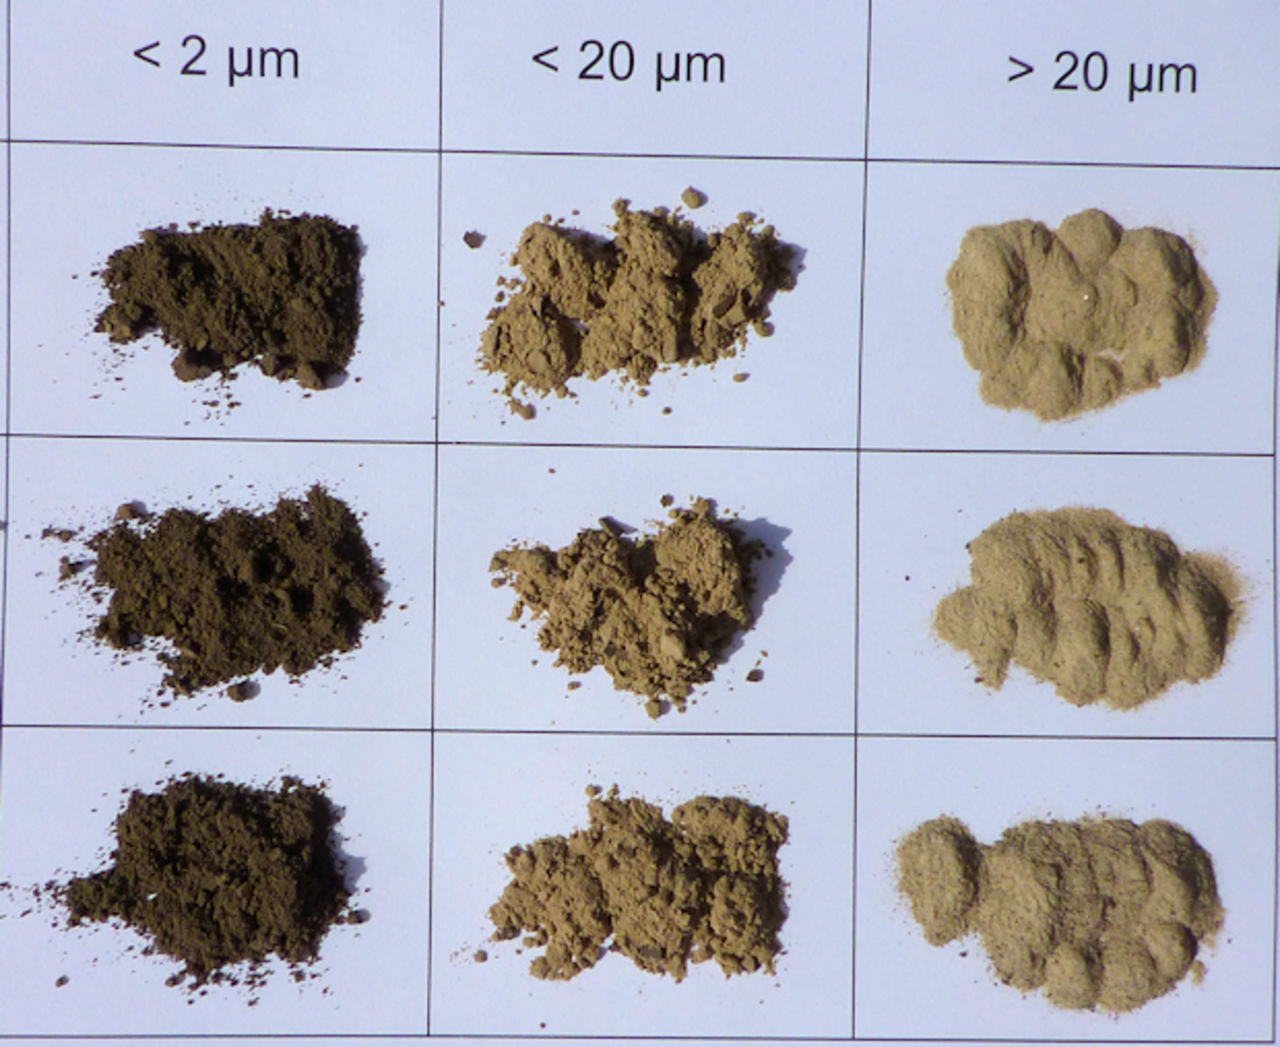 Welche Bodenpartikel Größenfraktionen (Ton: < 2 µm; Feinschluff: < 20 µm; Grobschluff und Sand: > 20 µm) werden von Bakterien aus Abwässern bevorzugt besiedelt?